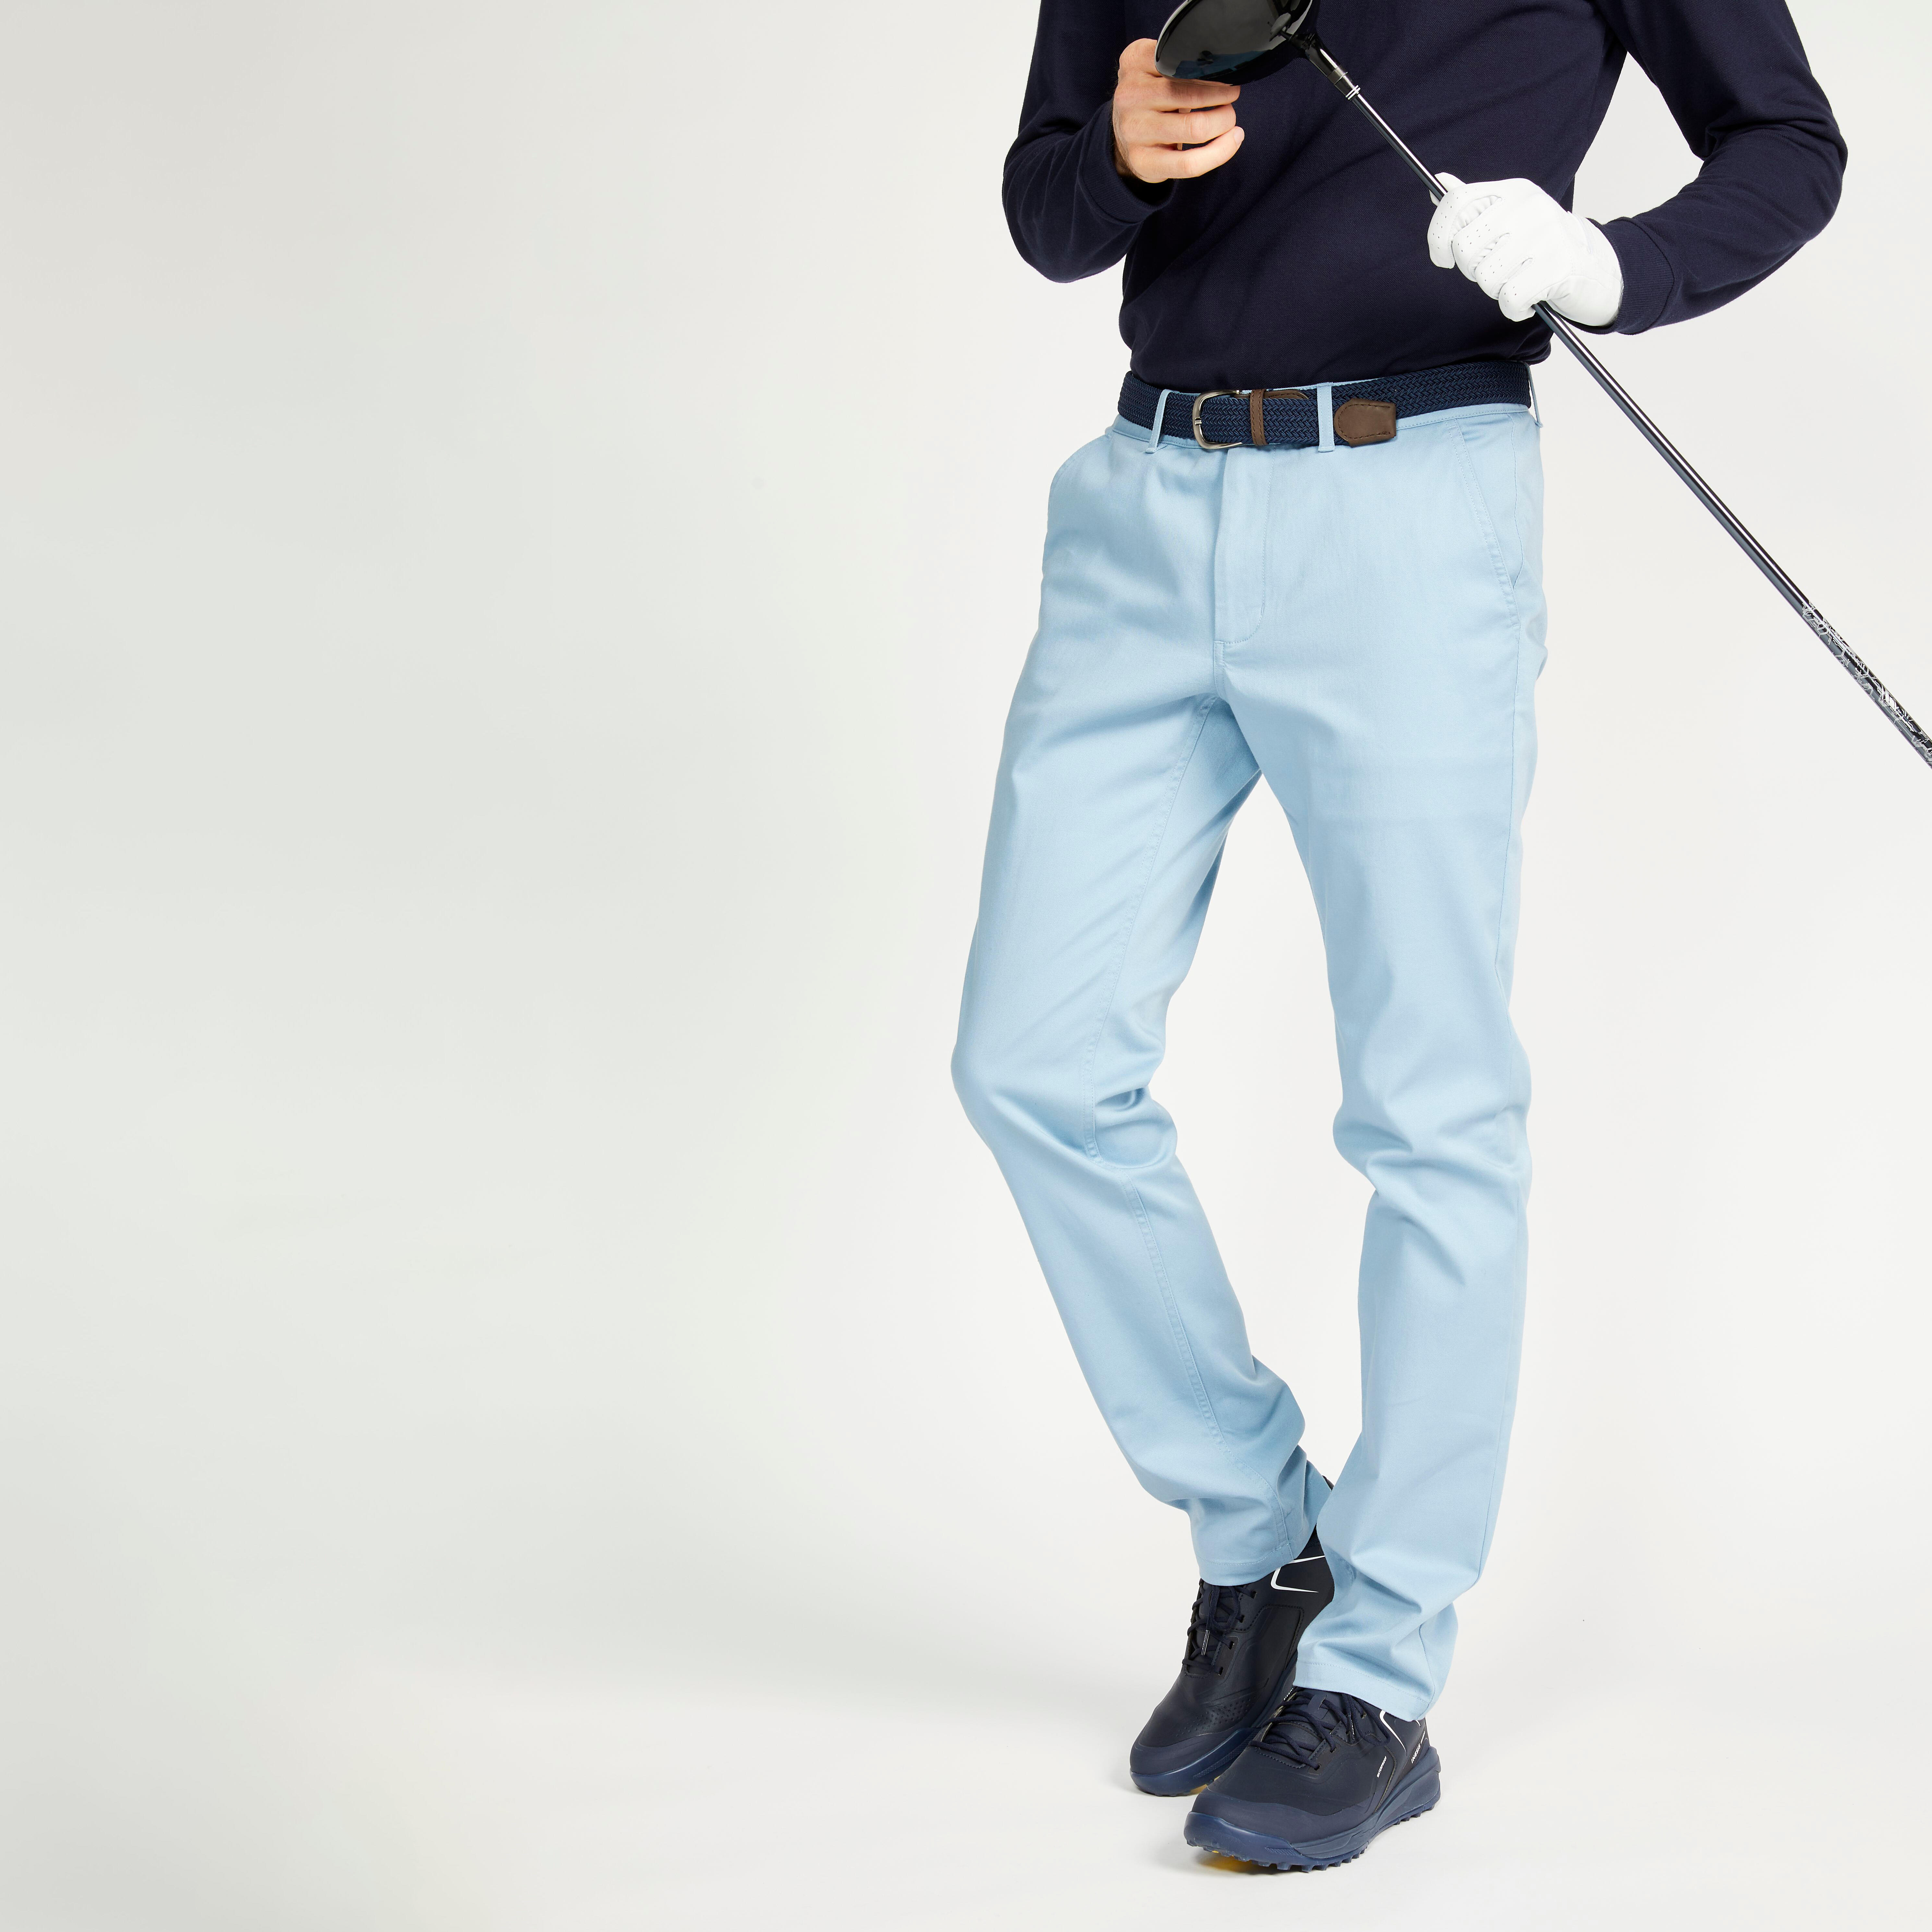 Black Golf Trousers for Men for sale  eBay